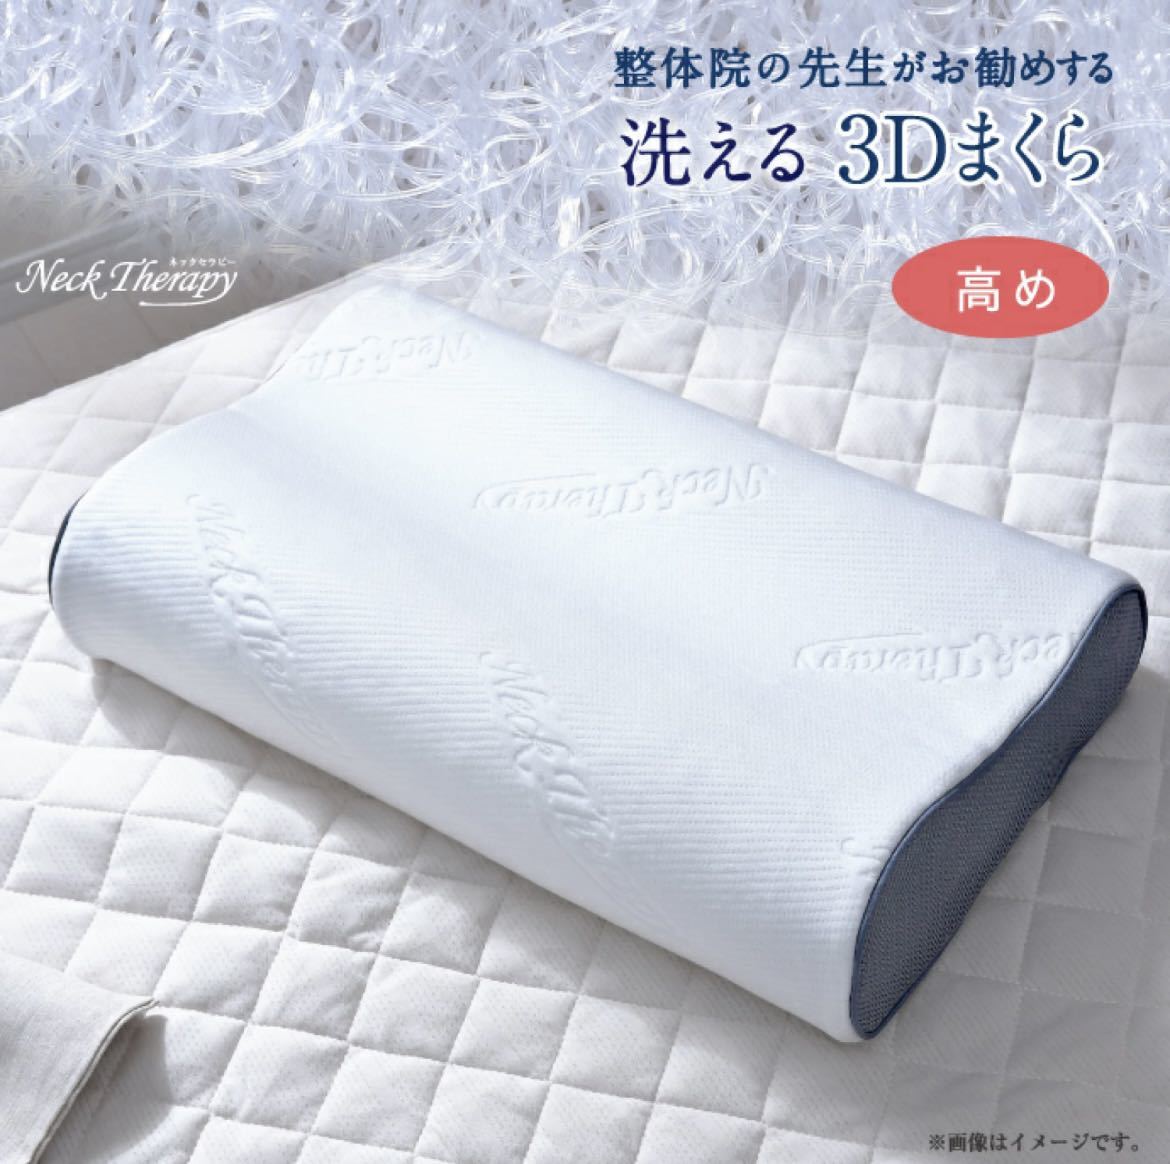  новый товар! целый body .. . сырой . рекомендация делать 3D подушка повышать (30×50×9cm)... подушка 